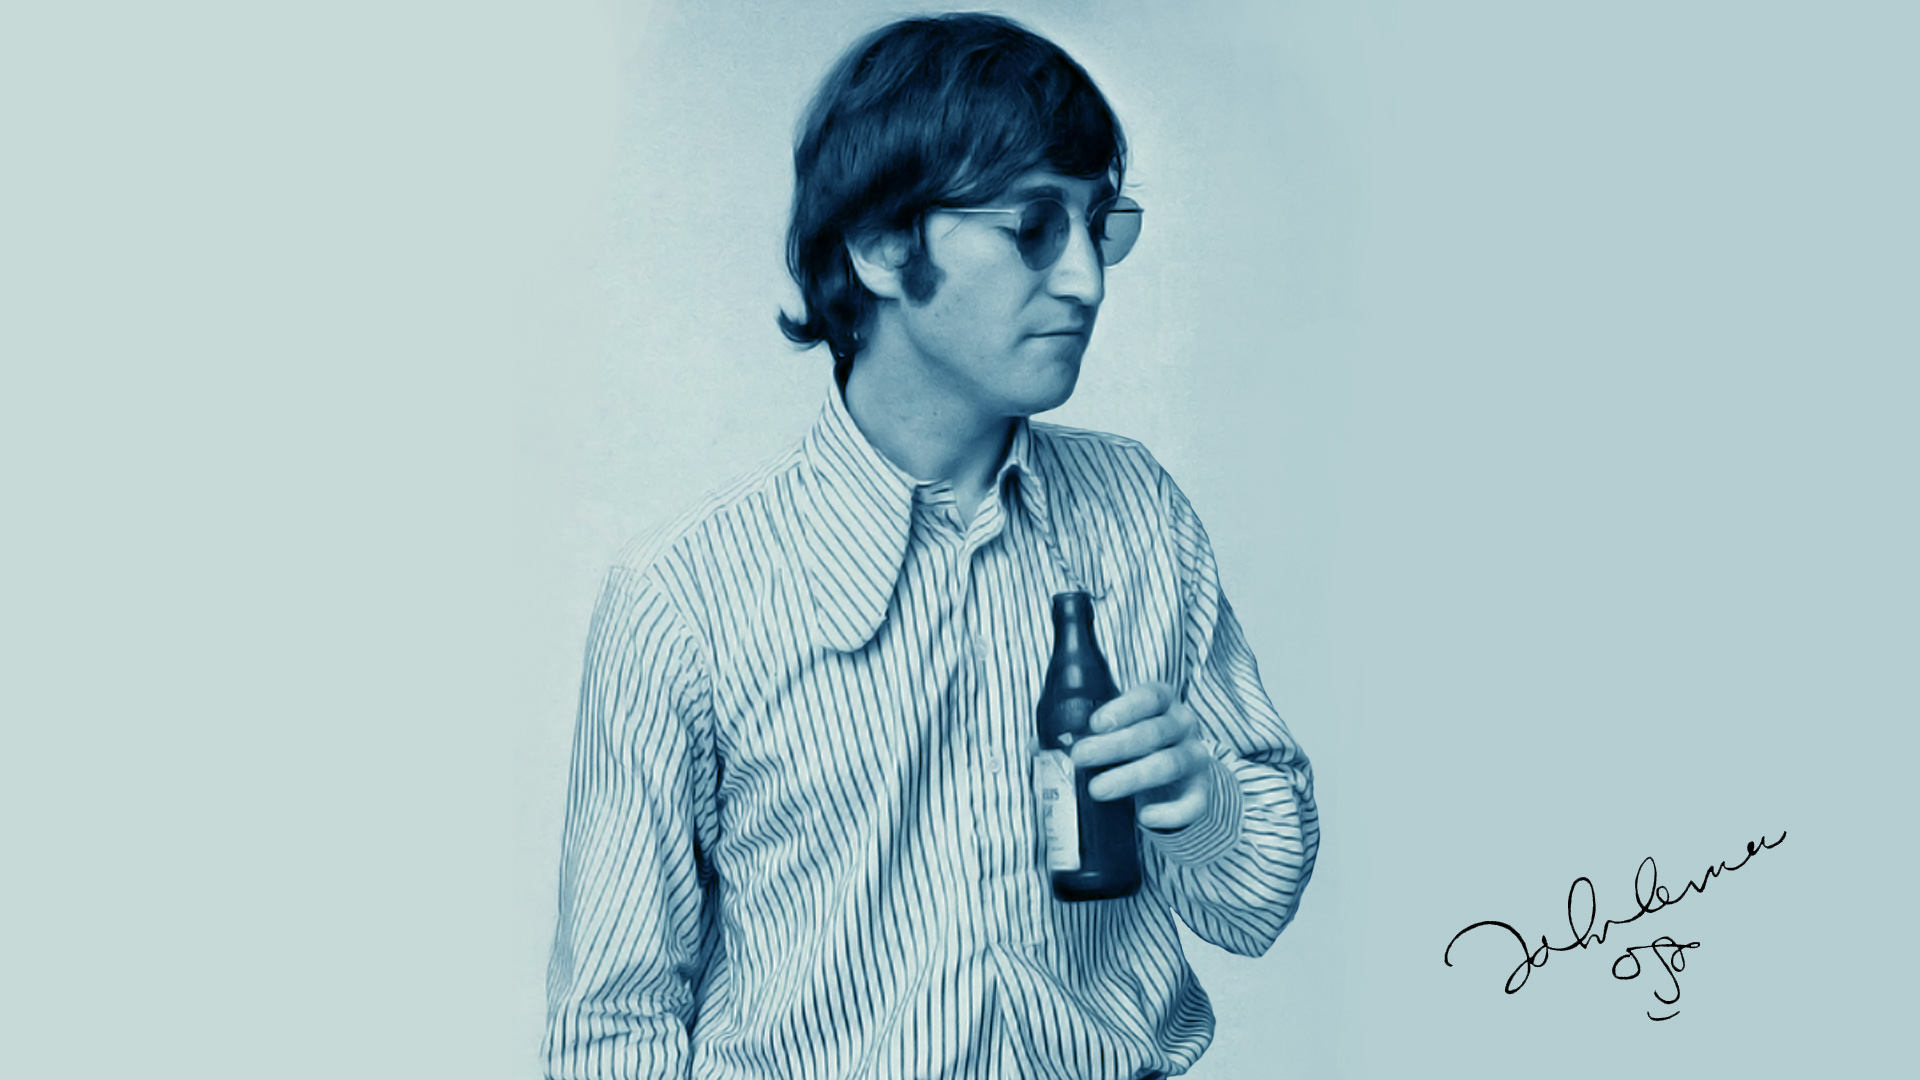 John Lennon Wallpaper In High Resolution For Get